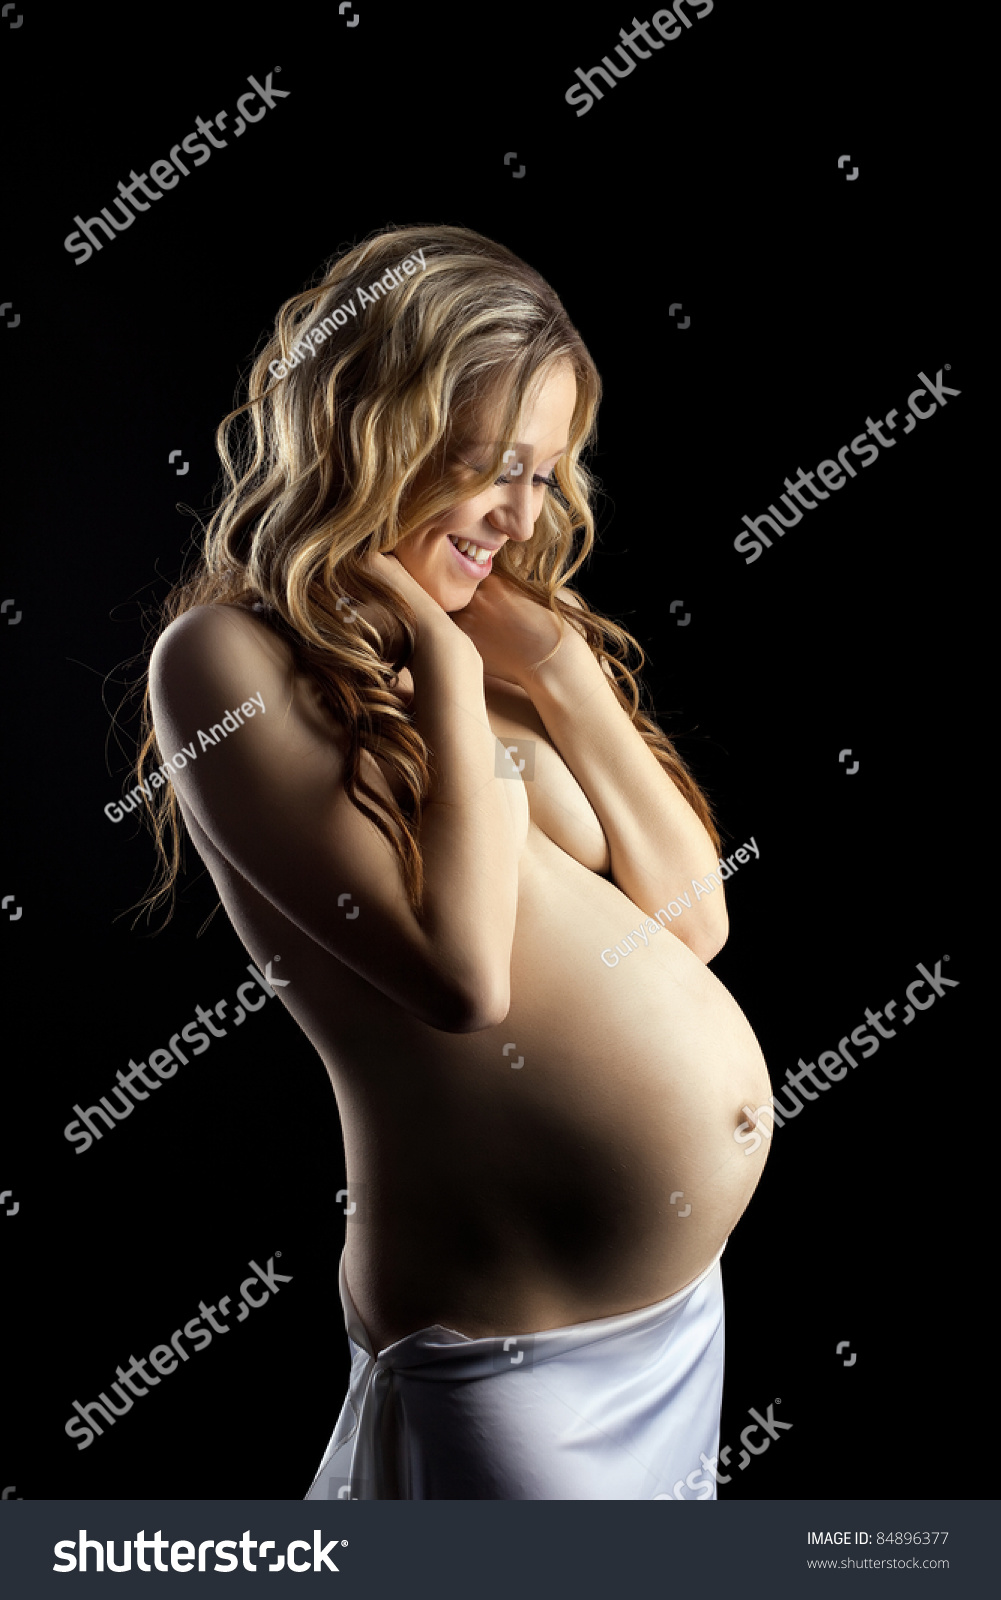 Картинки беременная голая